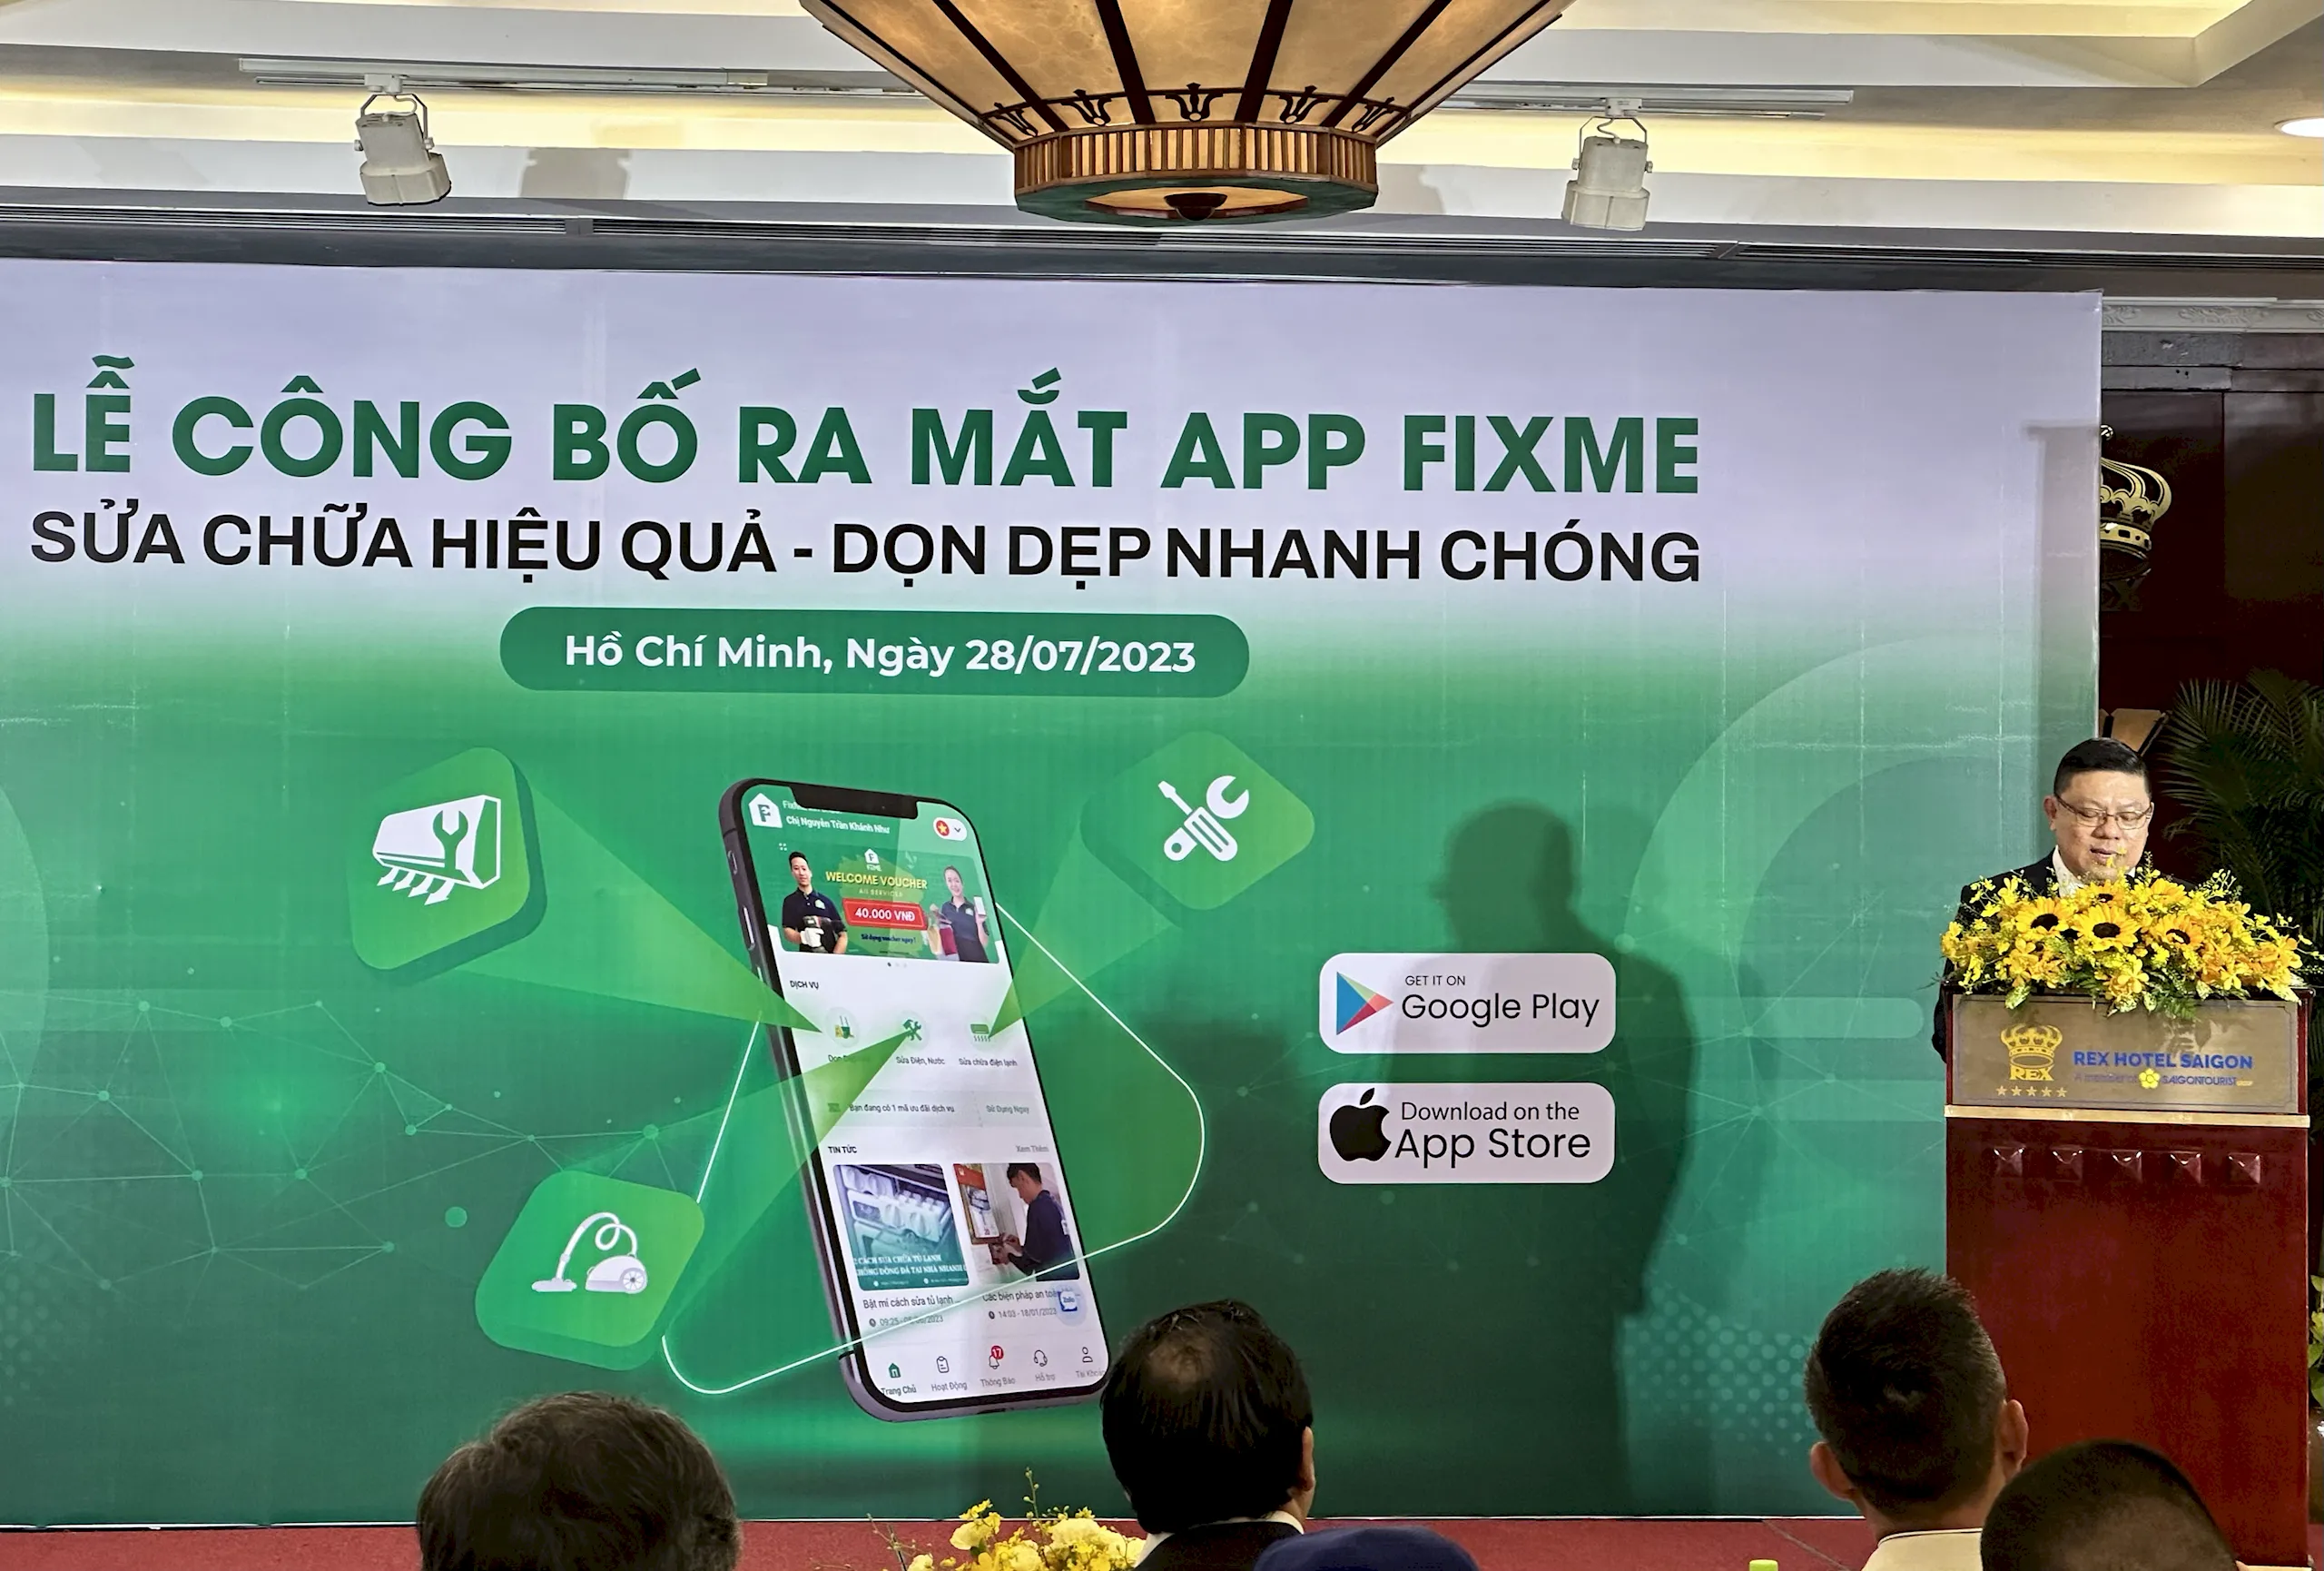 Ứng dụng FixME chính thức ra mắt tại Việt Nam - 60 giây giải quyết nhu cầu sửa điện dân dụng